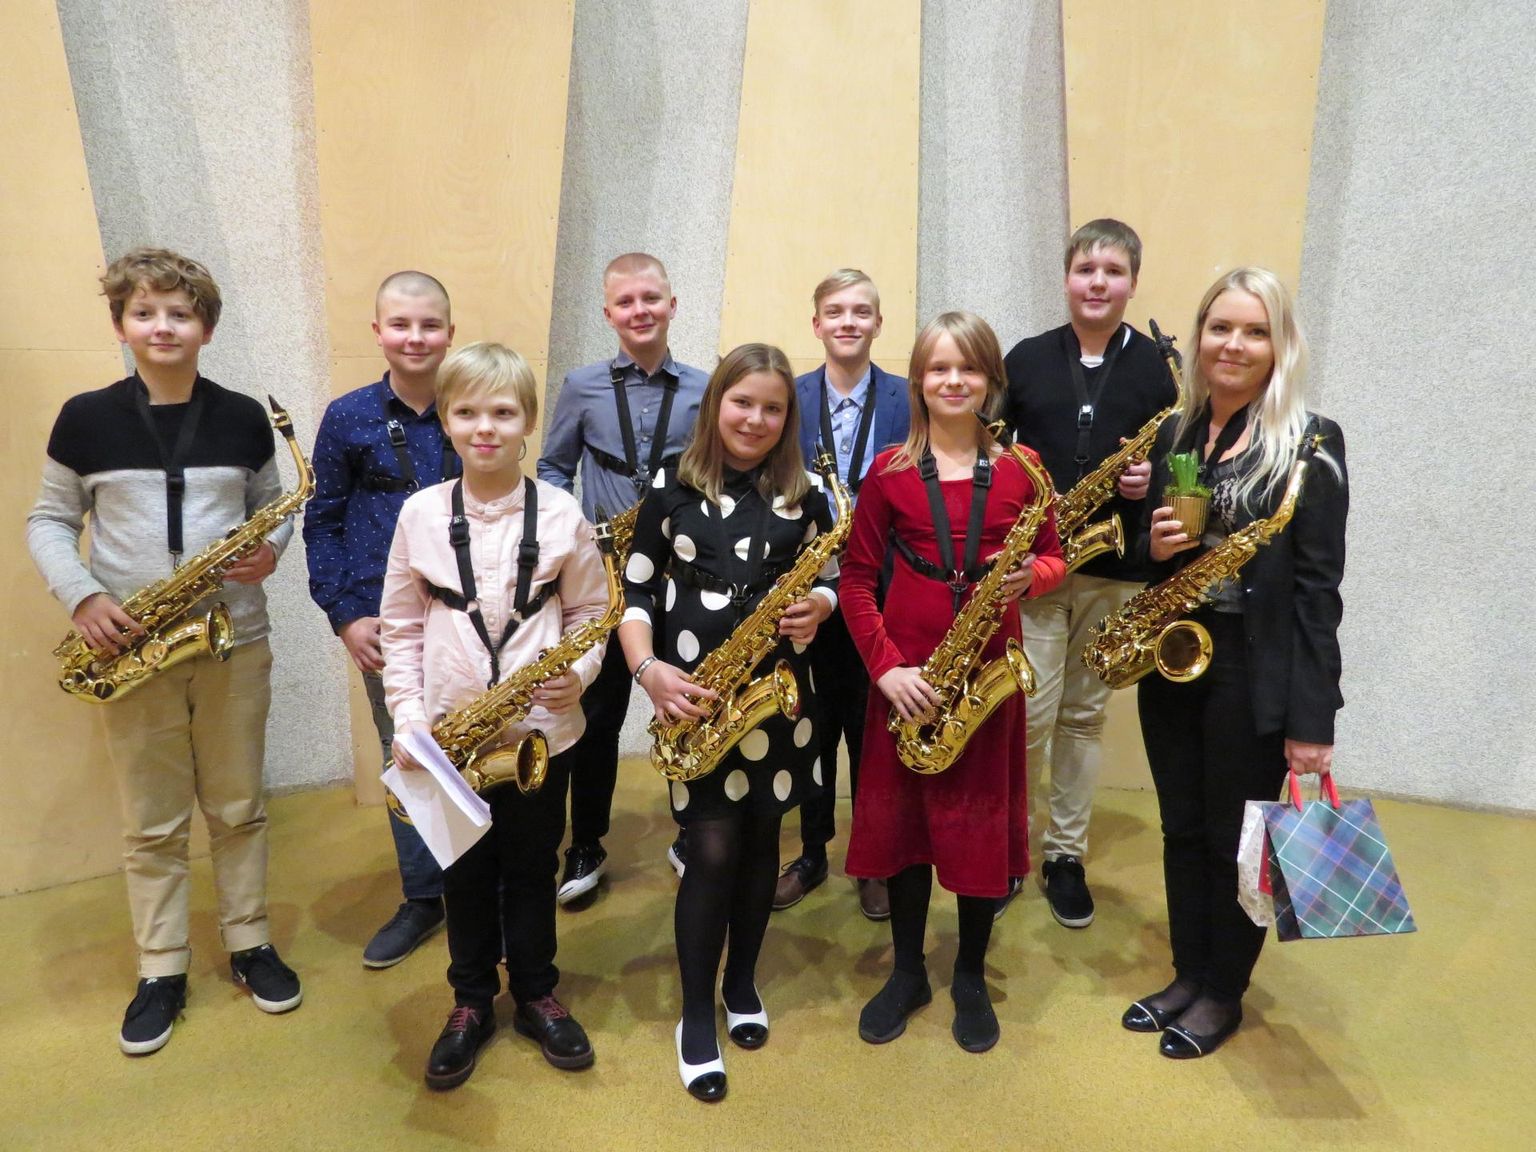 Õpetaja Hanna Taube oma saksofoniõpilastega. Foto on tehtud Pärnu muusikakooli kontserdil Pärnu kontserdimaja kammersaalis 7. detsembril, kui veel sai õpilastega fotosid teha.